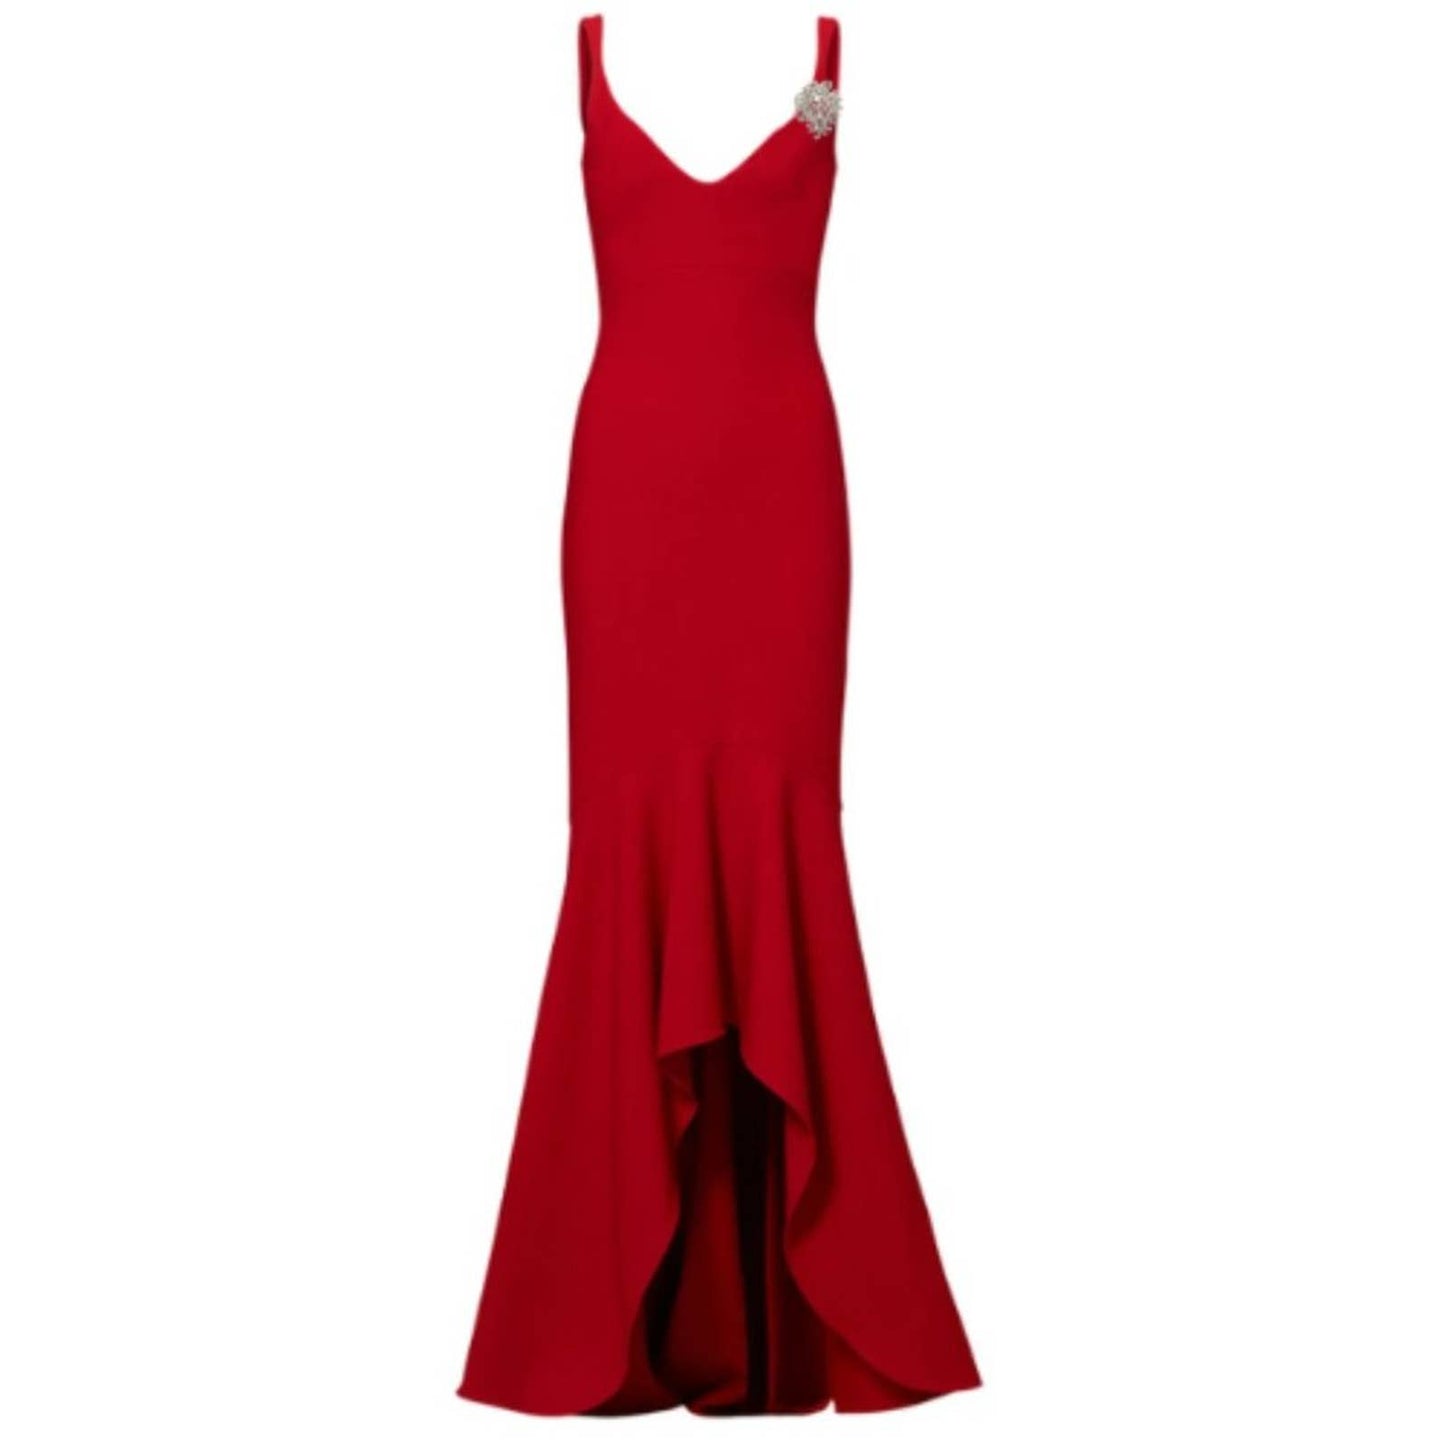 Cinq a Sept Red Carpet Premier Gown Size 4